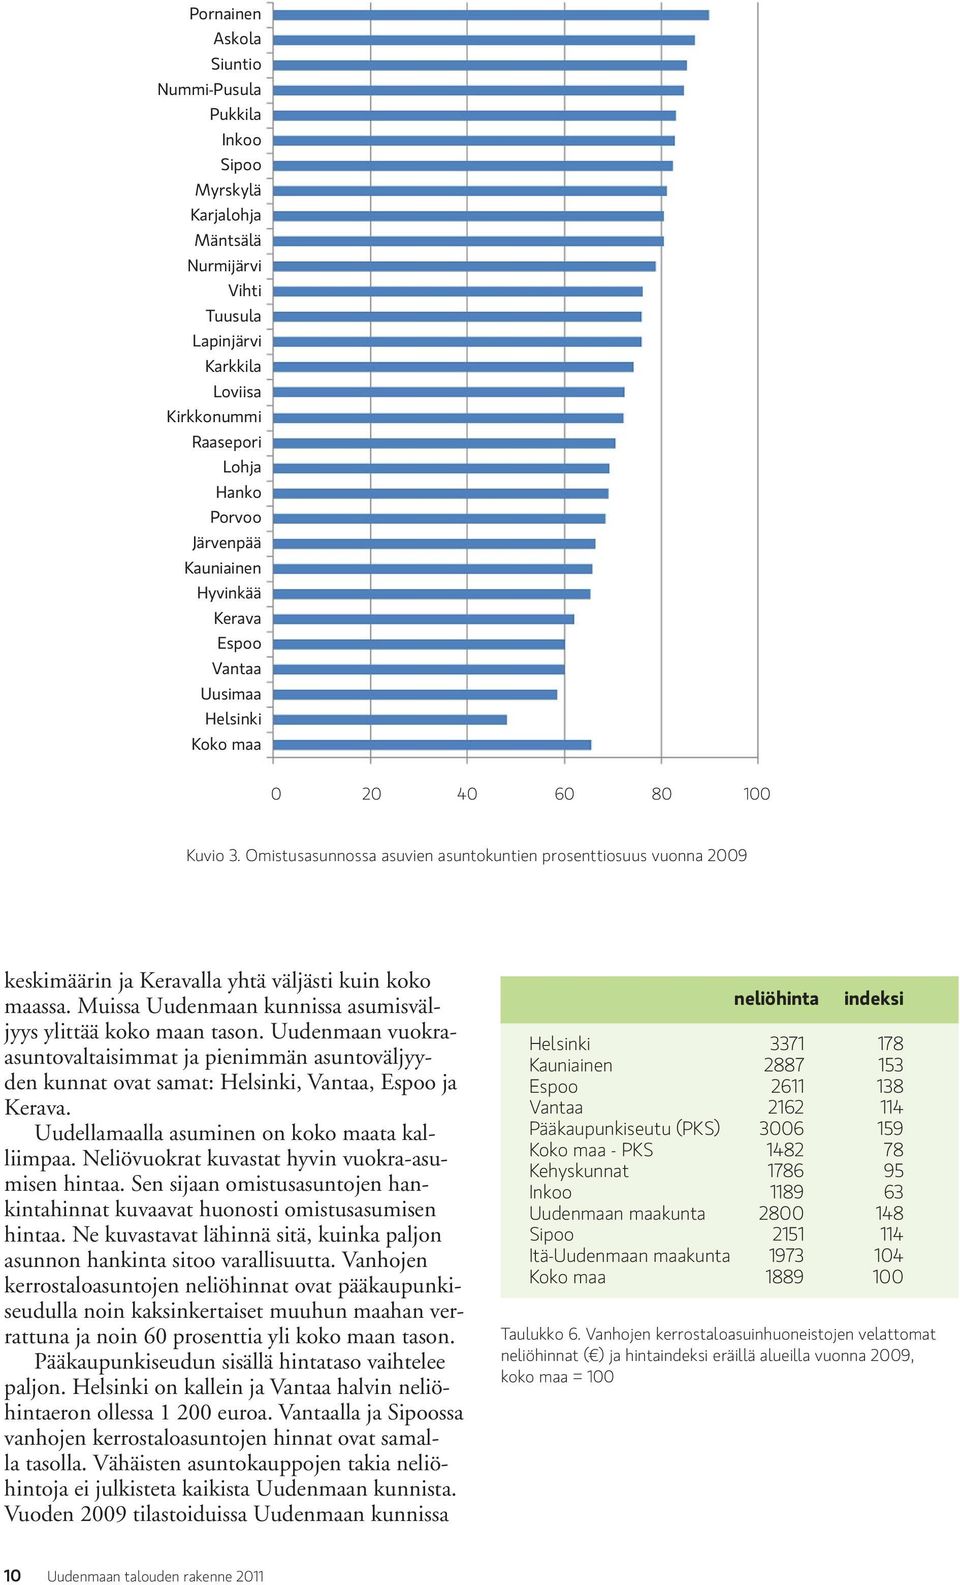 Omistusasunnossa asuvien asuntokuntien prosenttiosuus vuonna 2009 keskimäärin ja Keravalla yhtä väljästi kuin koko maassa. Muissa Uudenmaan kunnissa asumisväljyys ylittää koko maan tason.